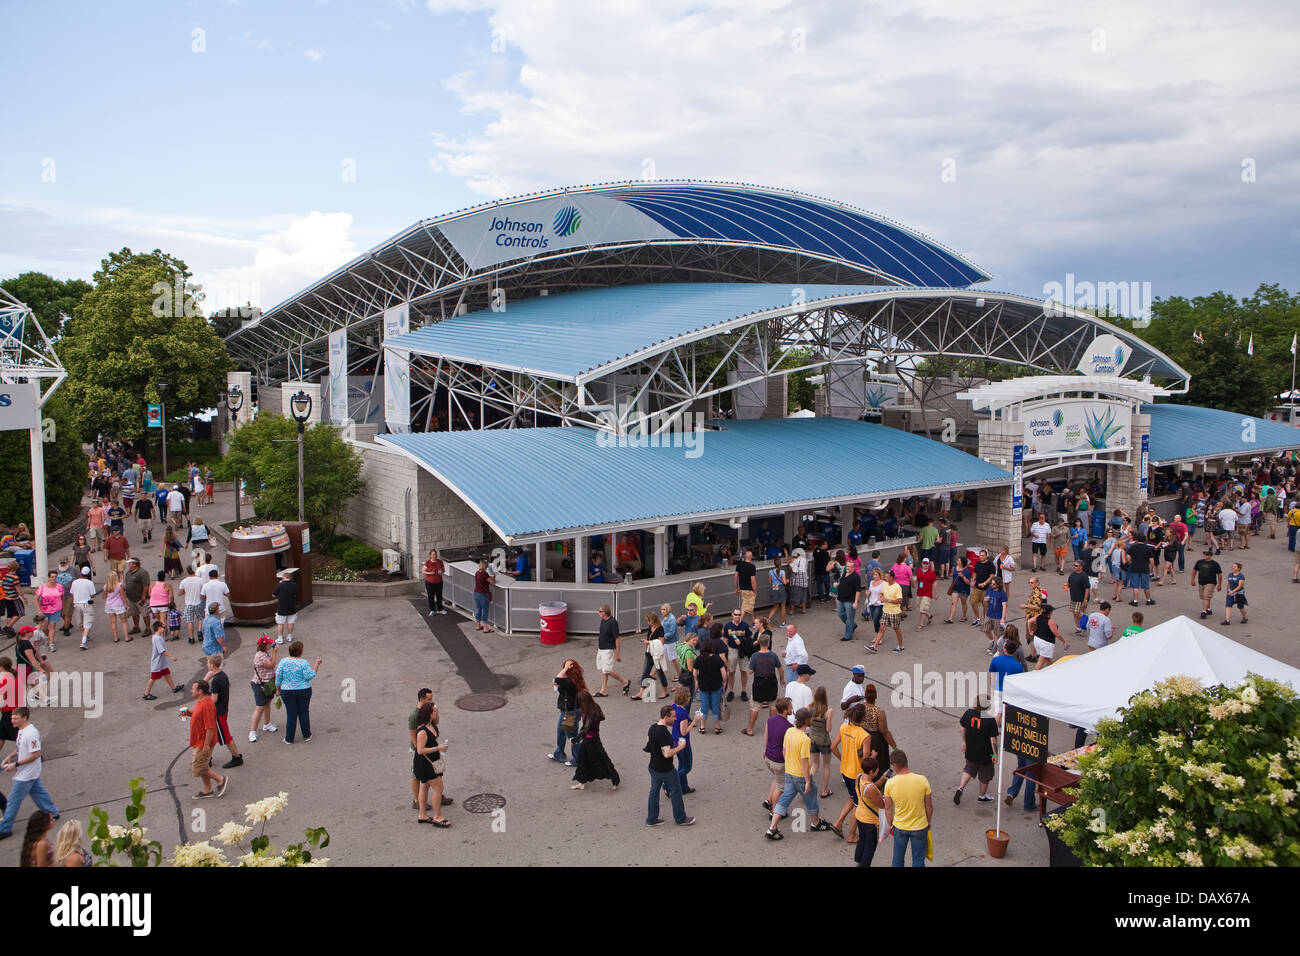 La Johnson Controls mondo stadio sonoro è visto sul Henry W. Maier Festival Park (Summerfest Grounds) in Milwaukee Foto Stock